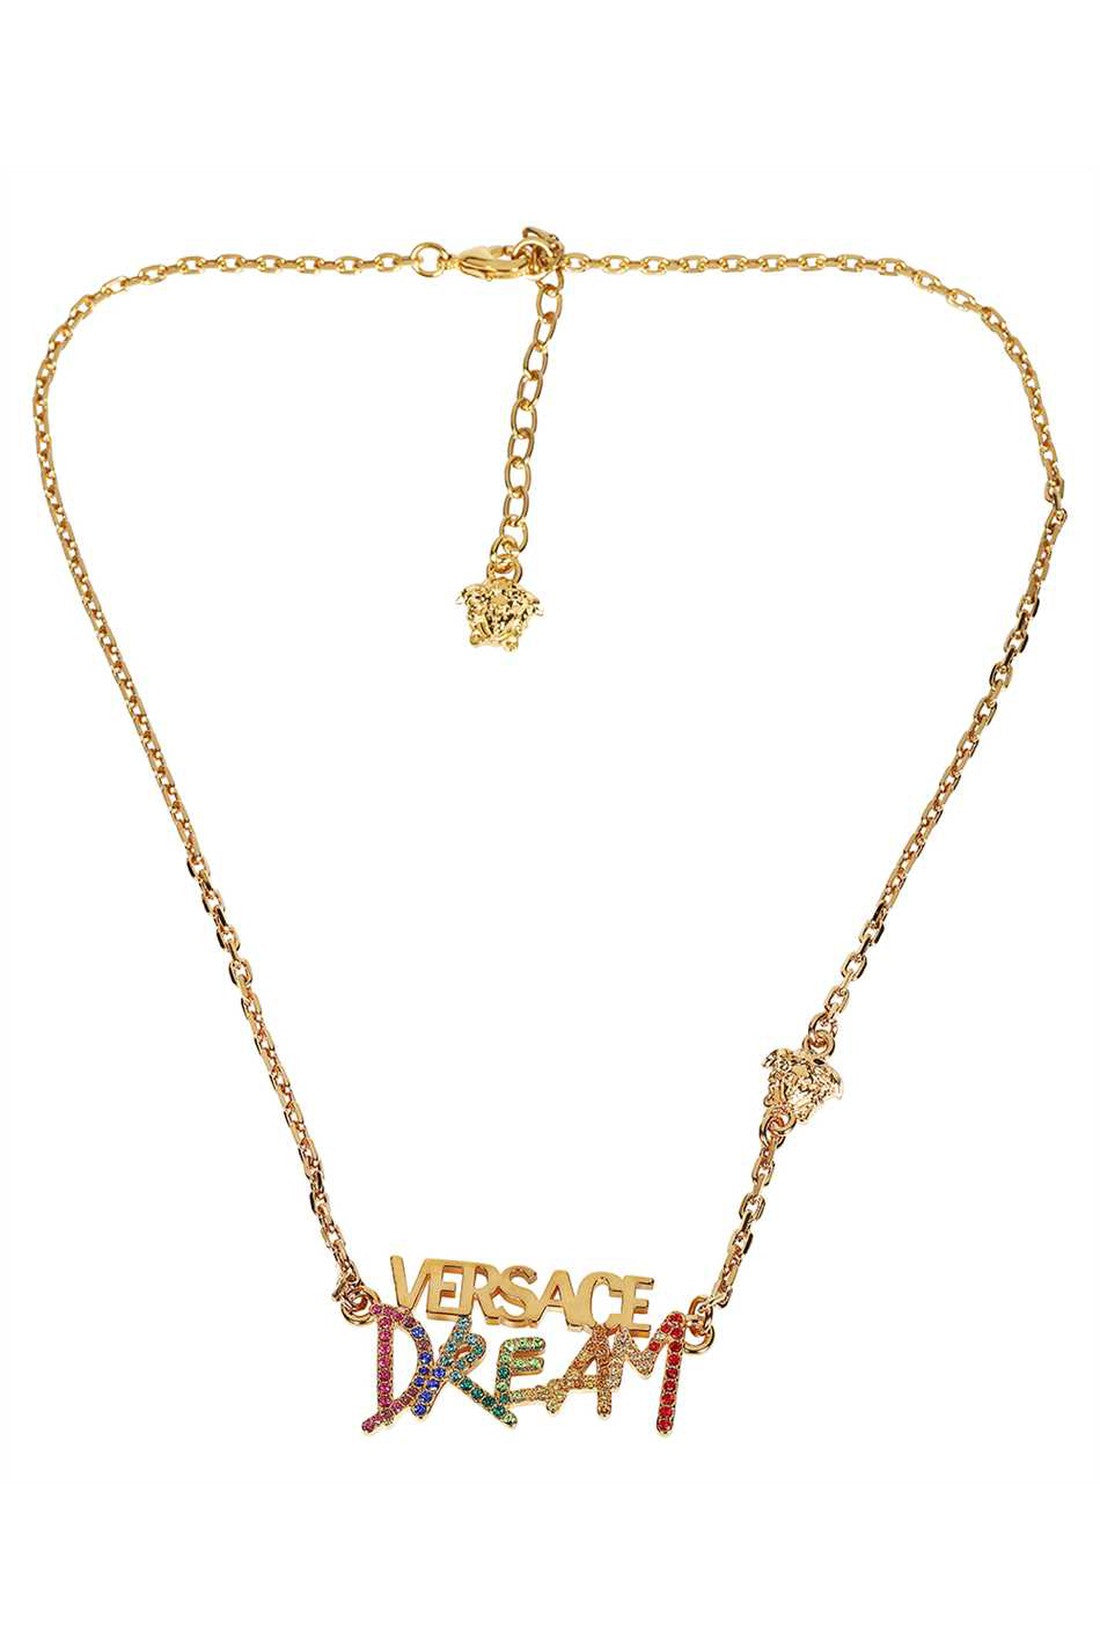 Gold-tone metal necklace-Versace-OUTLET-SALE-TU-ARCHIVIST